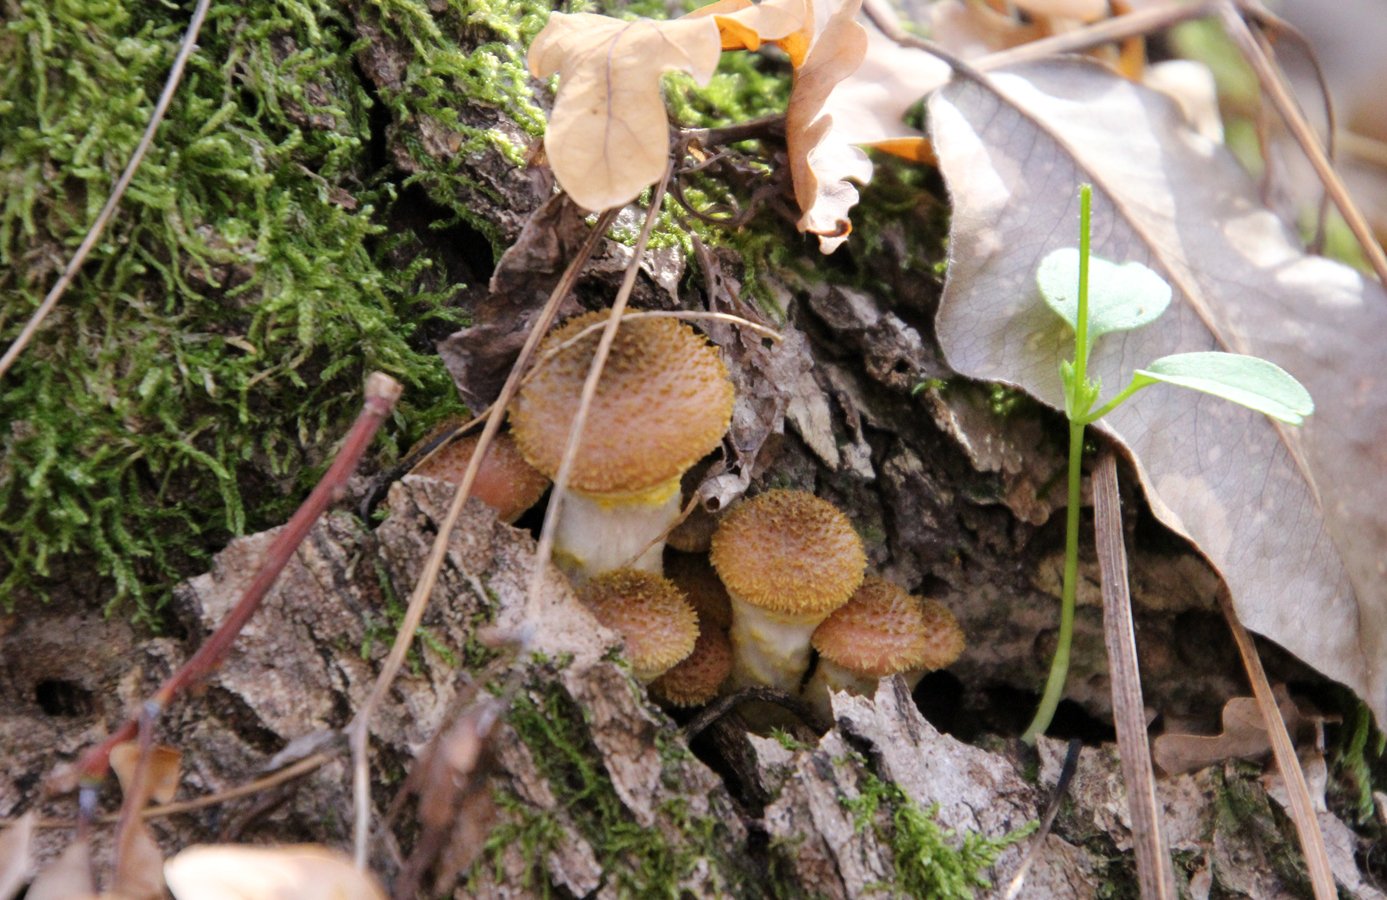 Опенок тополиный – вкусный культивируемый гриб